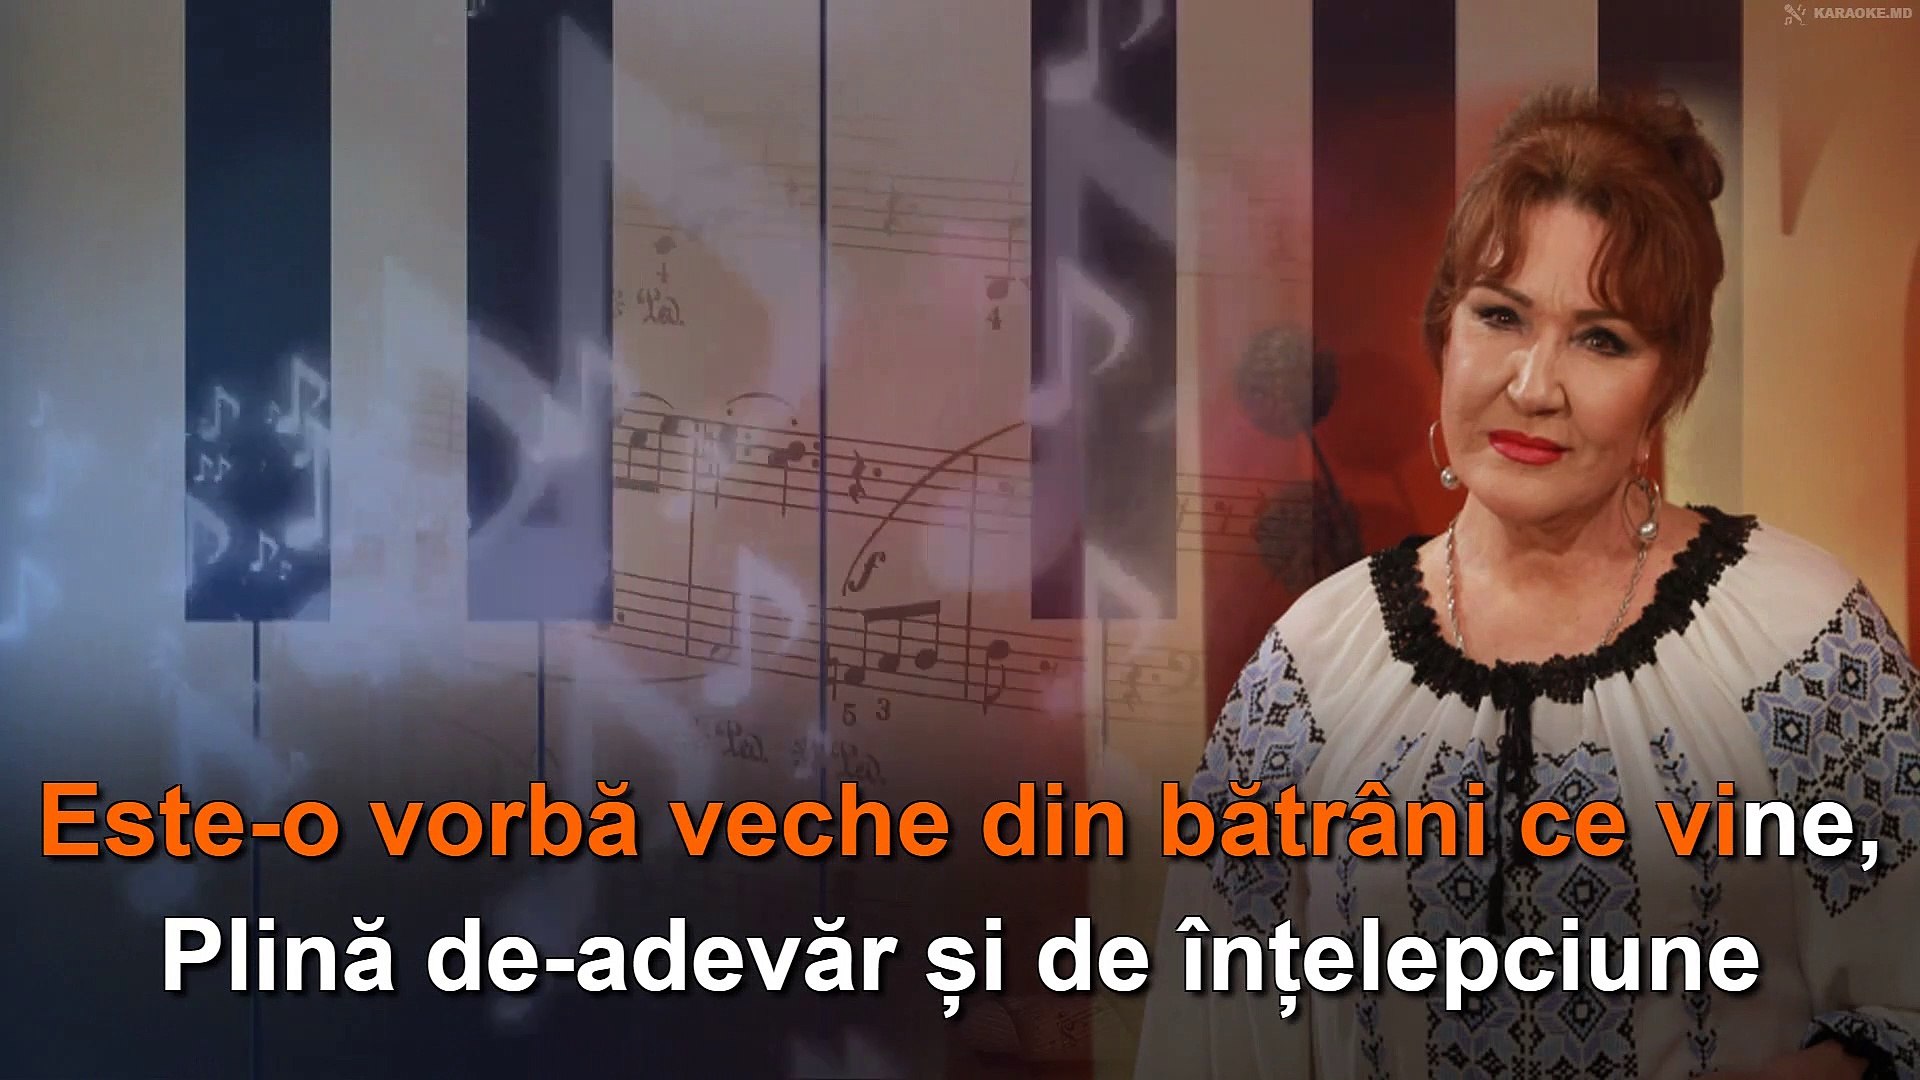 Zinaida Julea: "Cântă lăutare". Karaoke - video Dailymotion